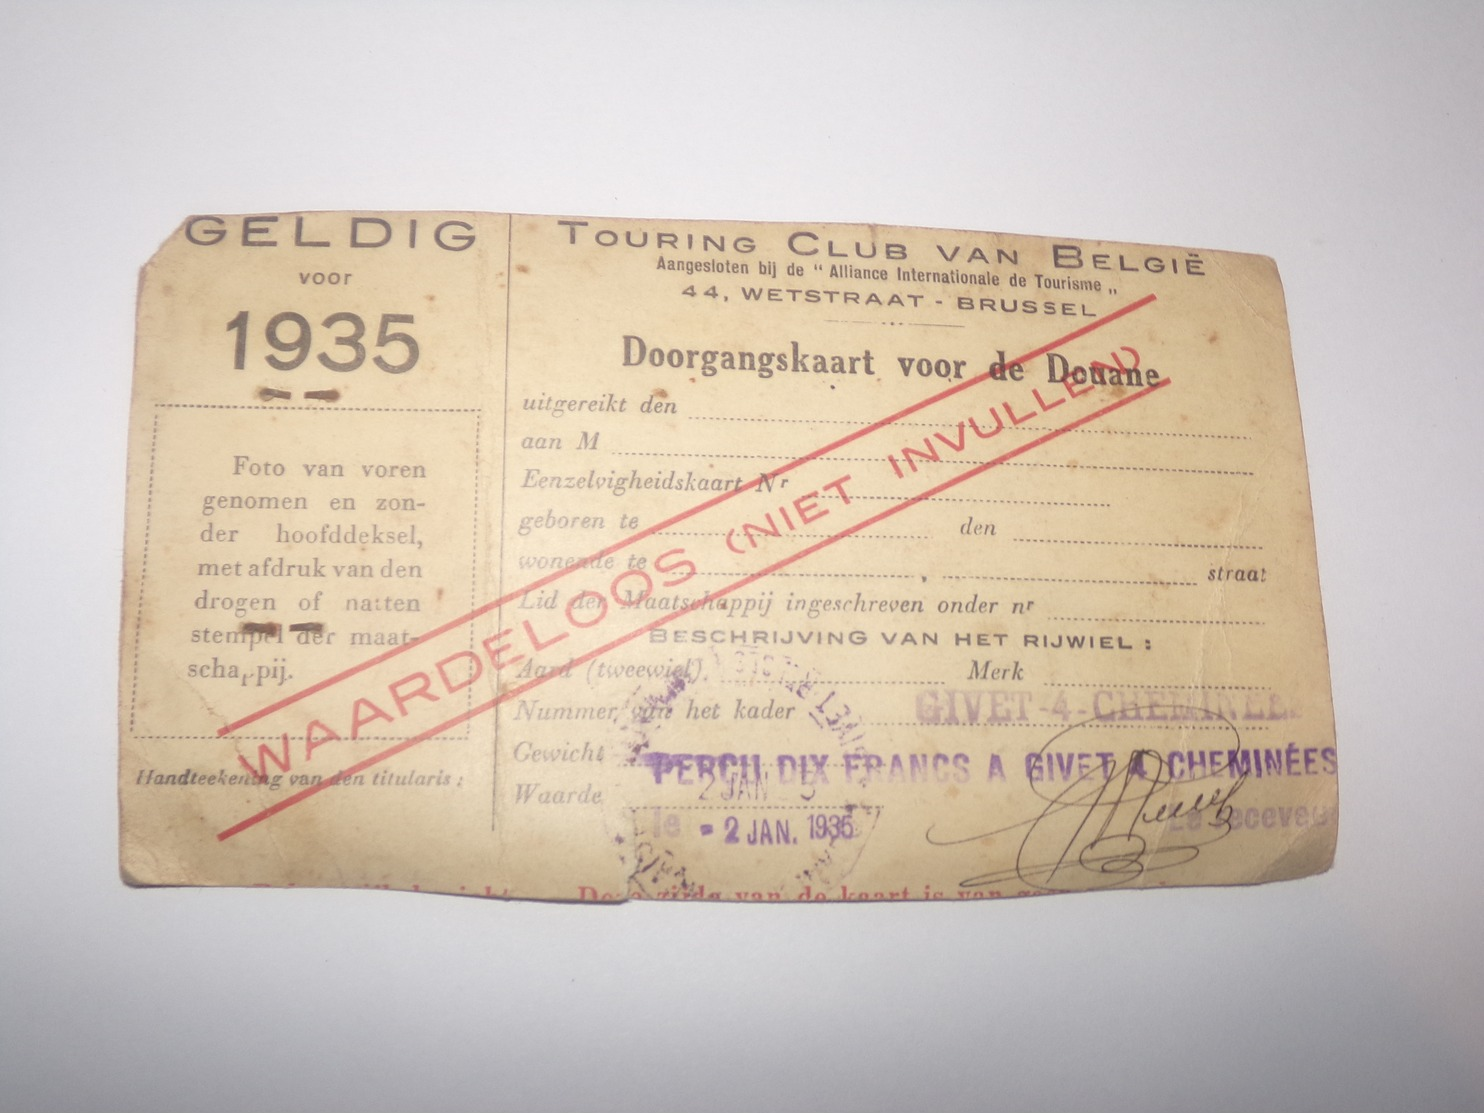 Touring Club De Belgique Carte De Passage Pour La Douane De 1935 Pour Habitant De Rienne Gedinne. - Documents Historiques